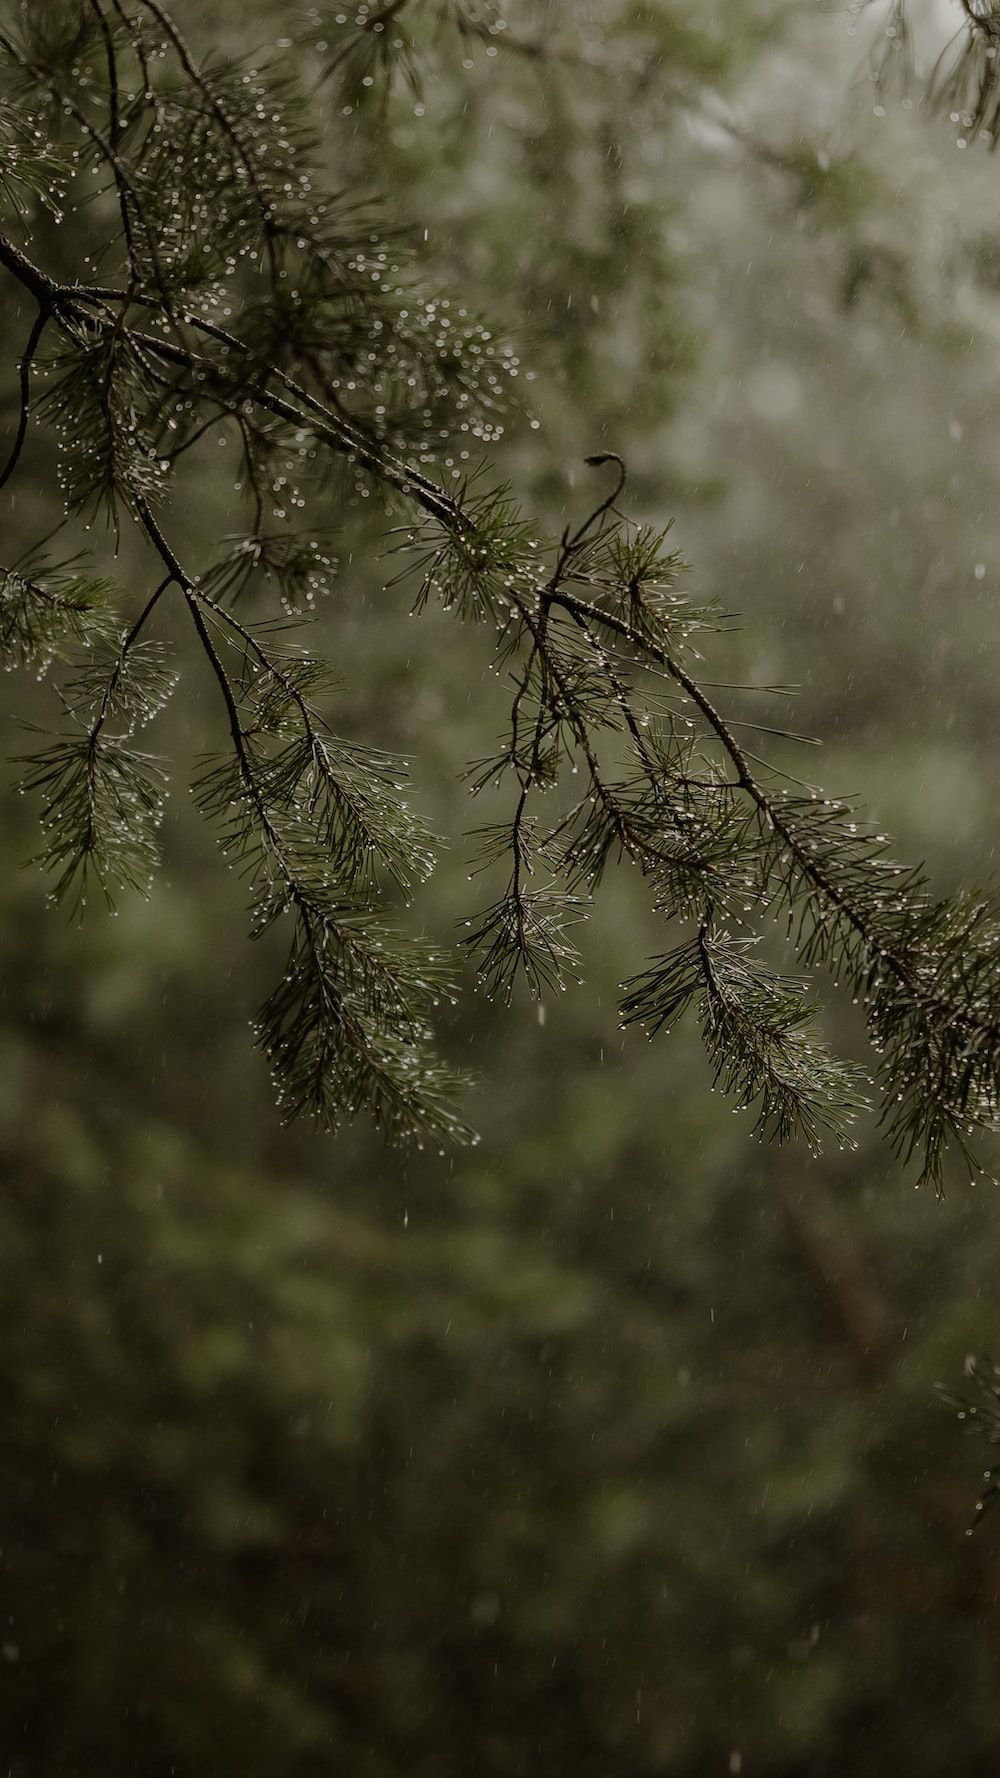  Regen Hintergrundbild 1000x1778. Foto zum Thema Ein Vogel, der im Regen auf einem Ast sitzt